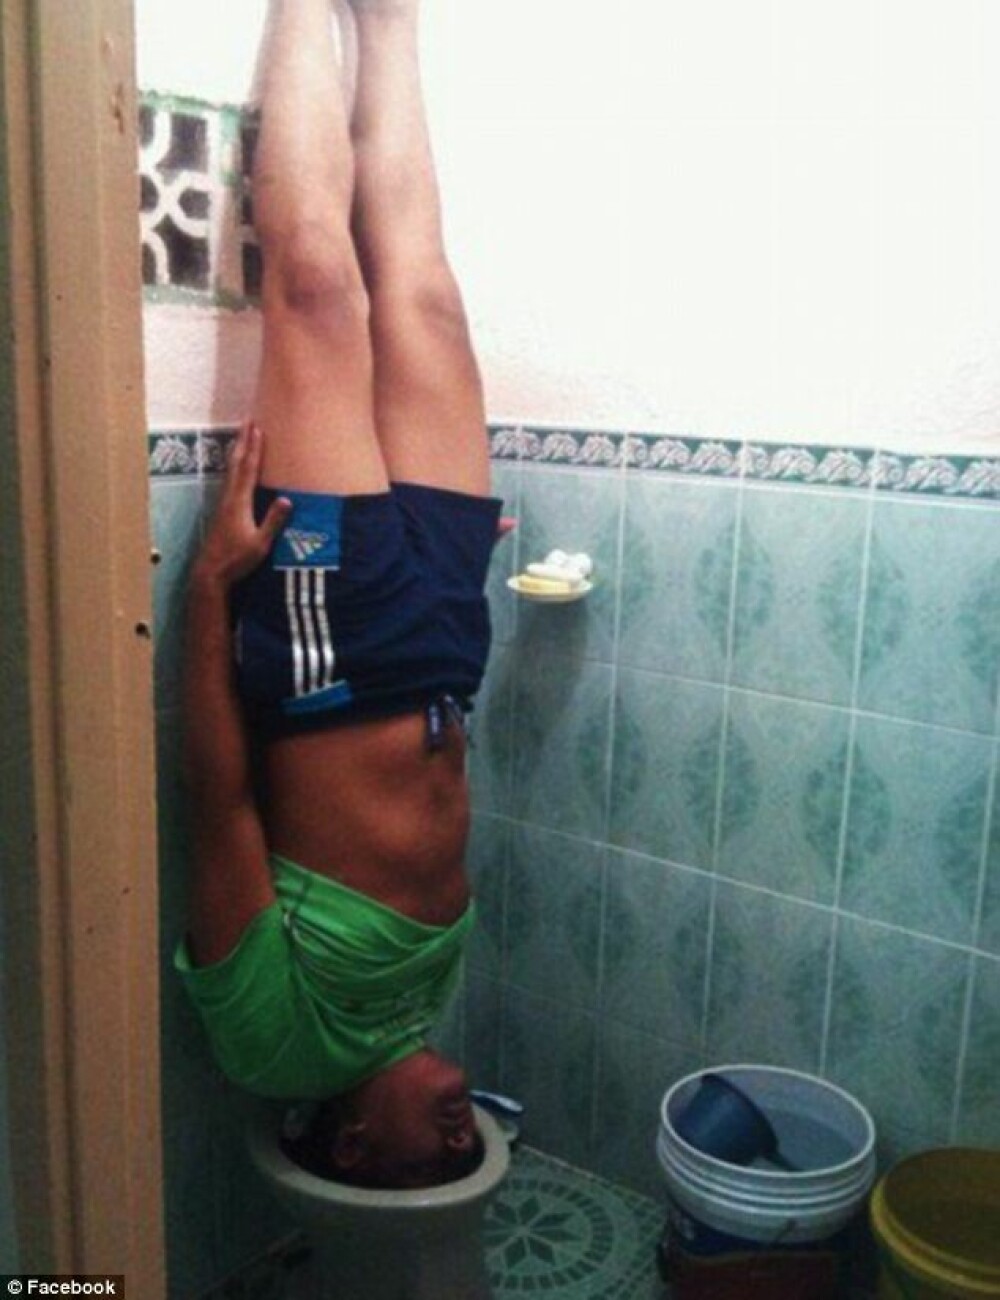 GALERIE FOTO. Nu trageti apa. Noua moda de “planking” face ravagii pe Internet - Imaginea 1